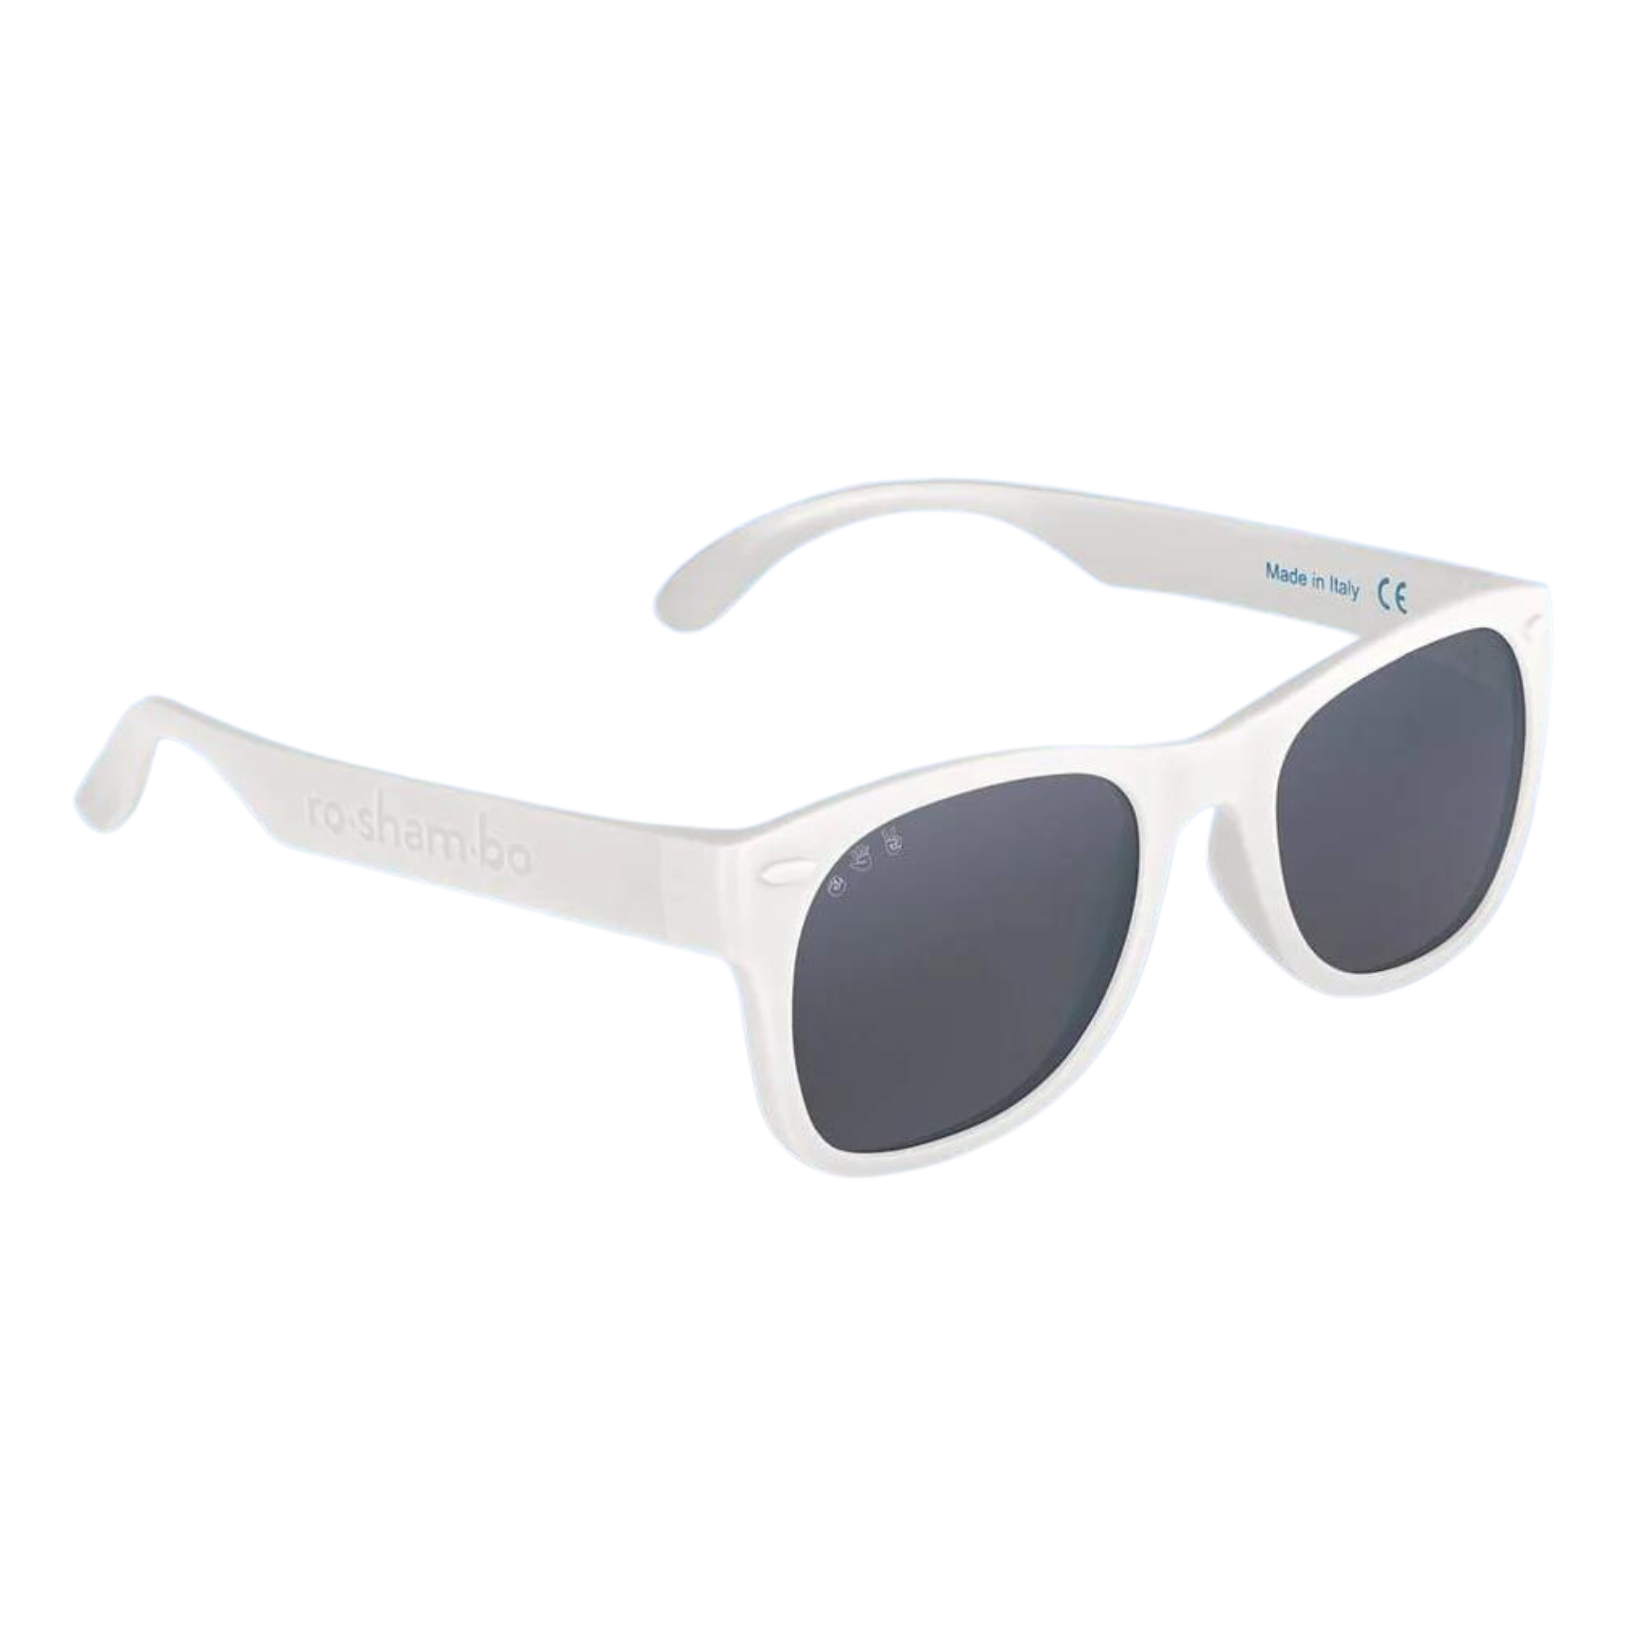 Roshambo Eyewear Wayfarer Sunglasses